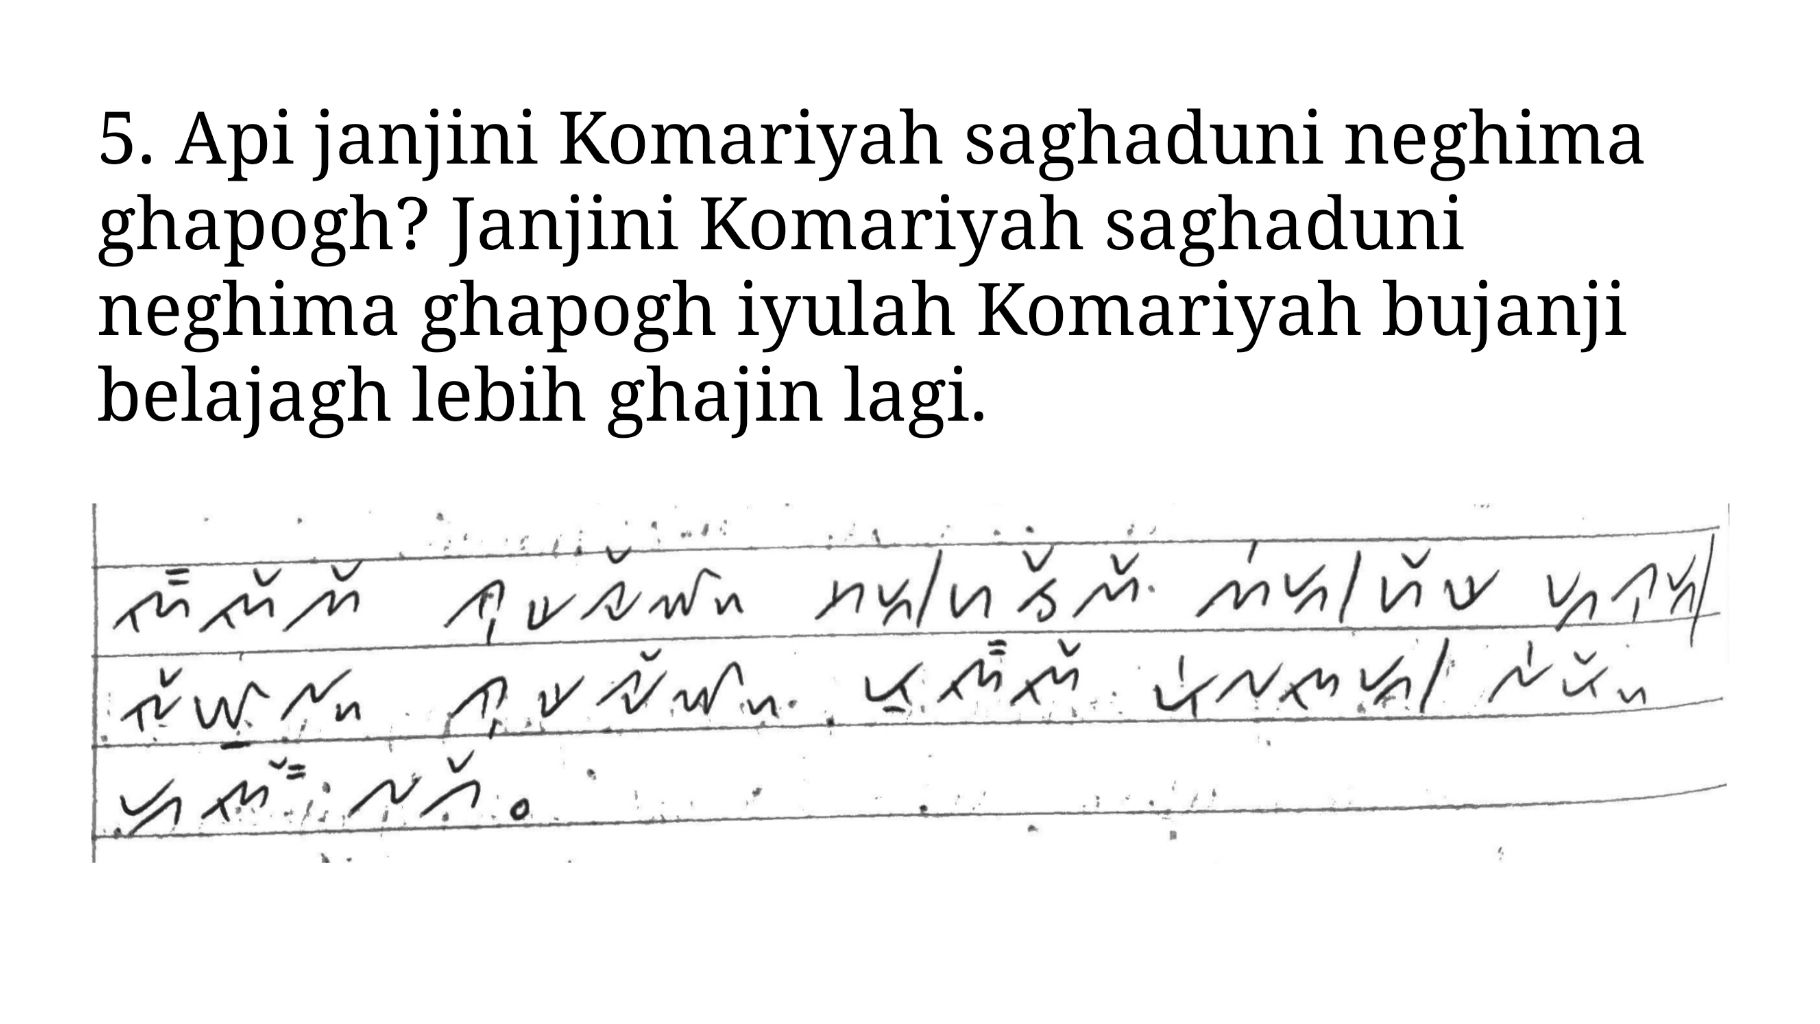 Kunci Jawaban nomor 5 Bahasa Lampung kelas 4 SD halaman 54 55 56 56 aksara Lampung